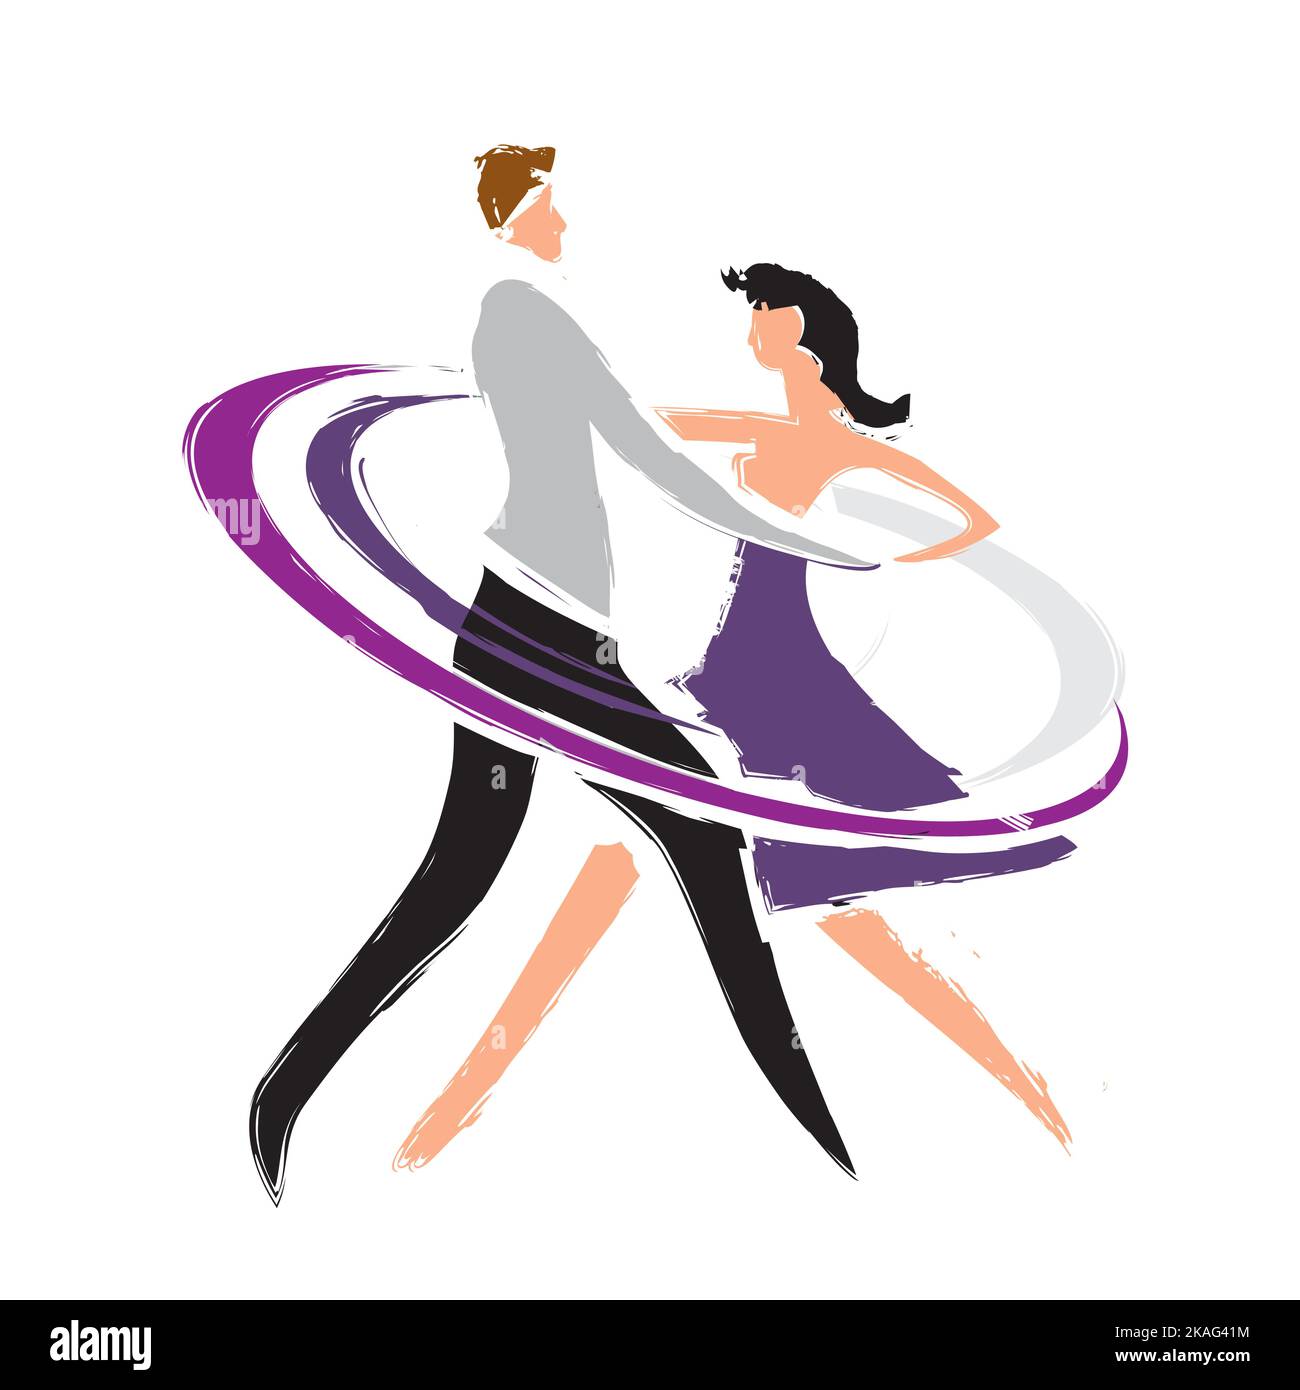 Tanztänzer, Paare. Stilisierte Zeichnung mit Silhouetten tanzender Paare. Imitation der Pinselzeichnung. Vektor verfügbar. Stock Vektor